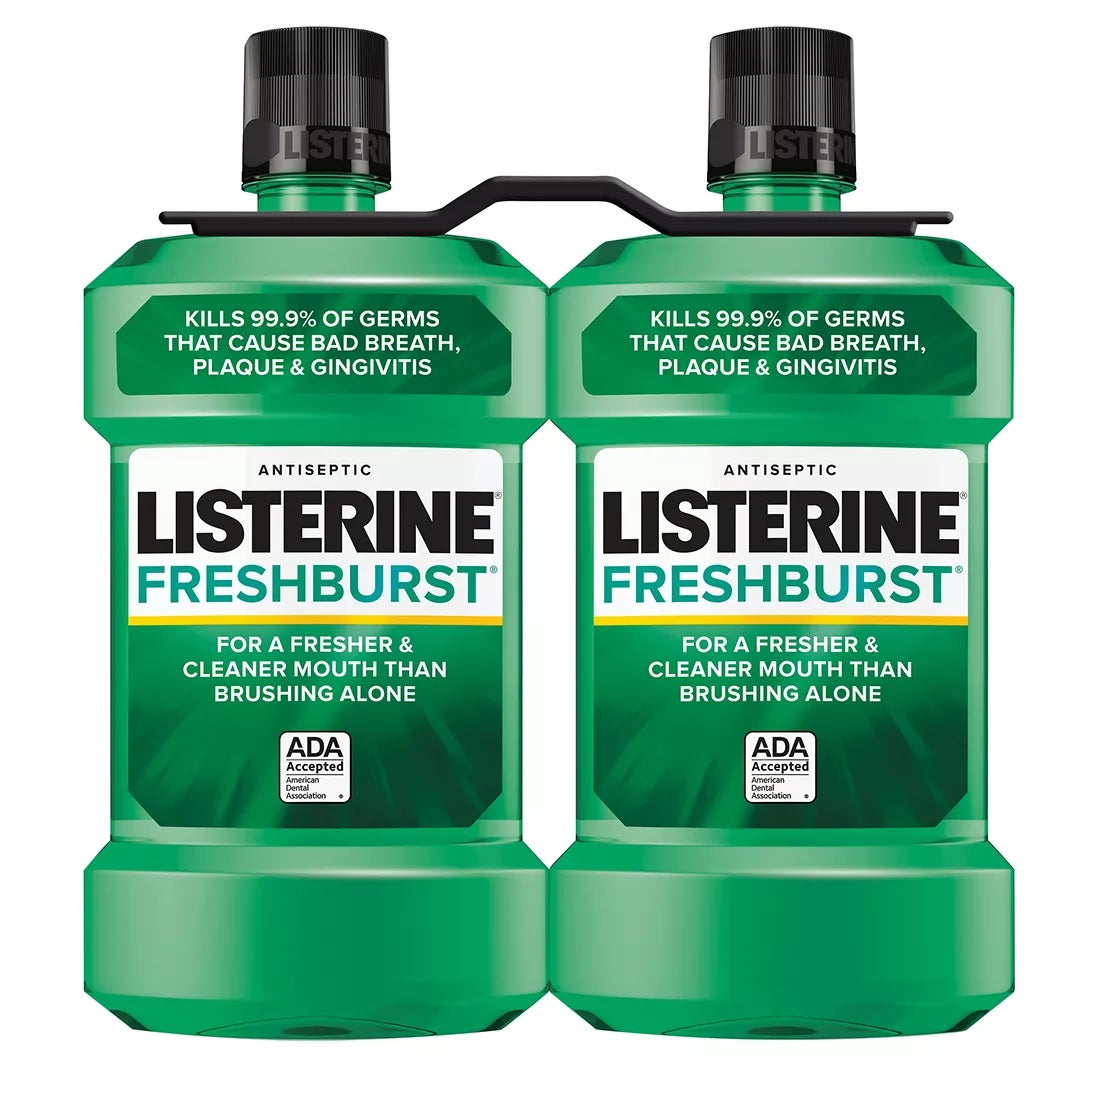 Listerine Freshburst Antiseptic Mouth Wash - 1.5L/8pk